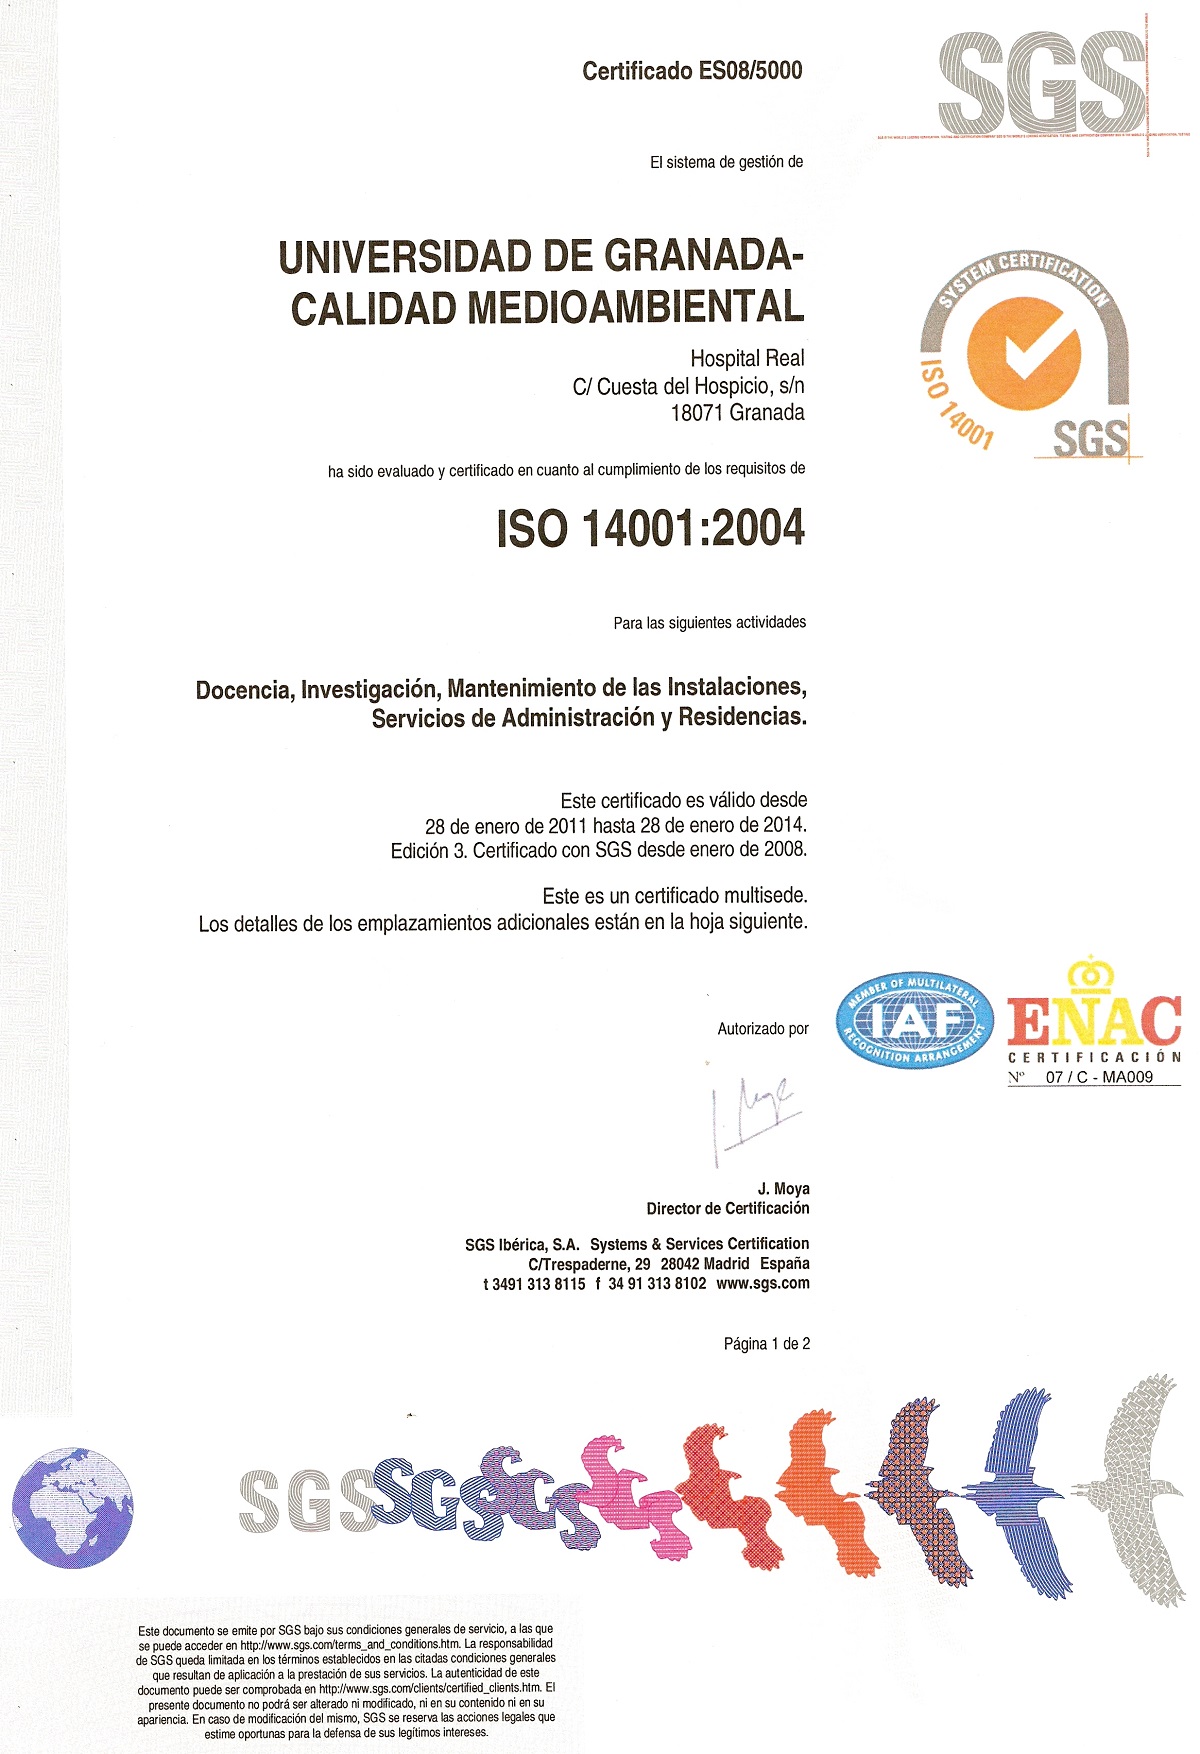 Certificado ISO 14001 emitido por SGS